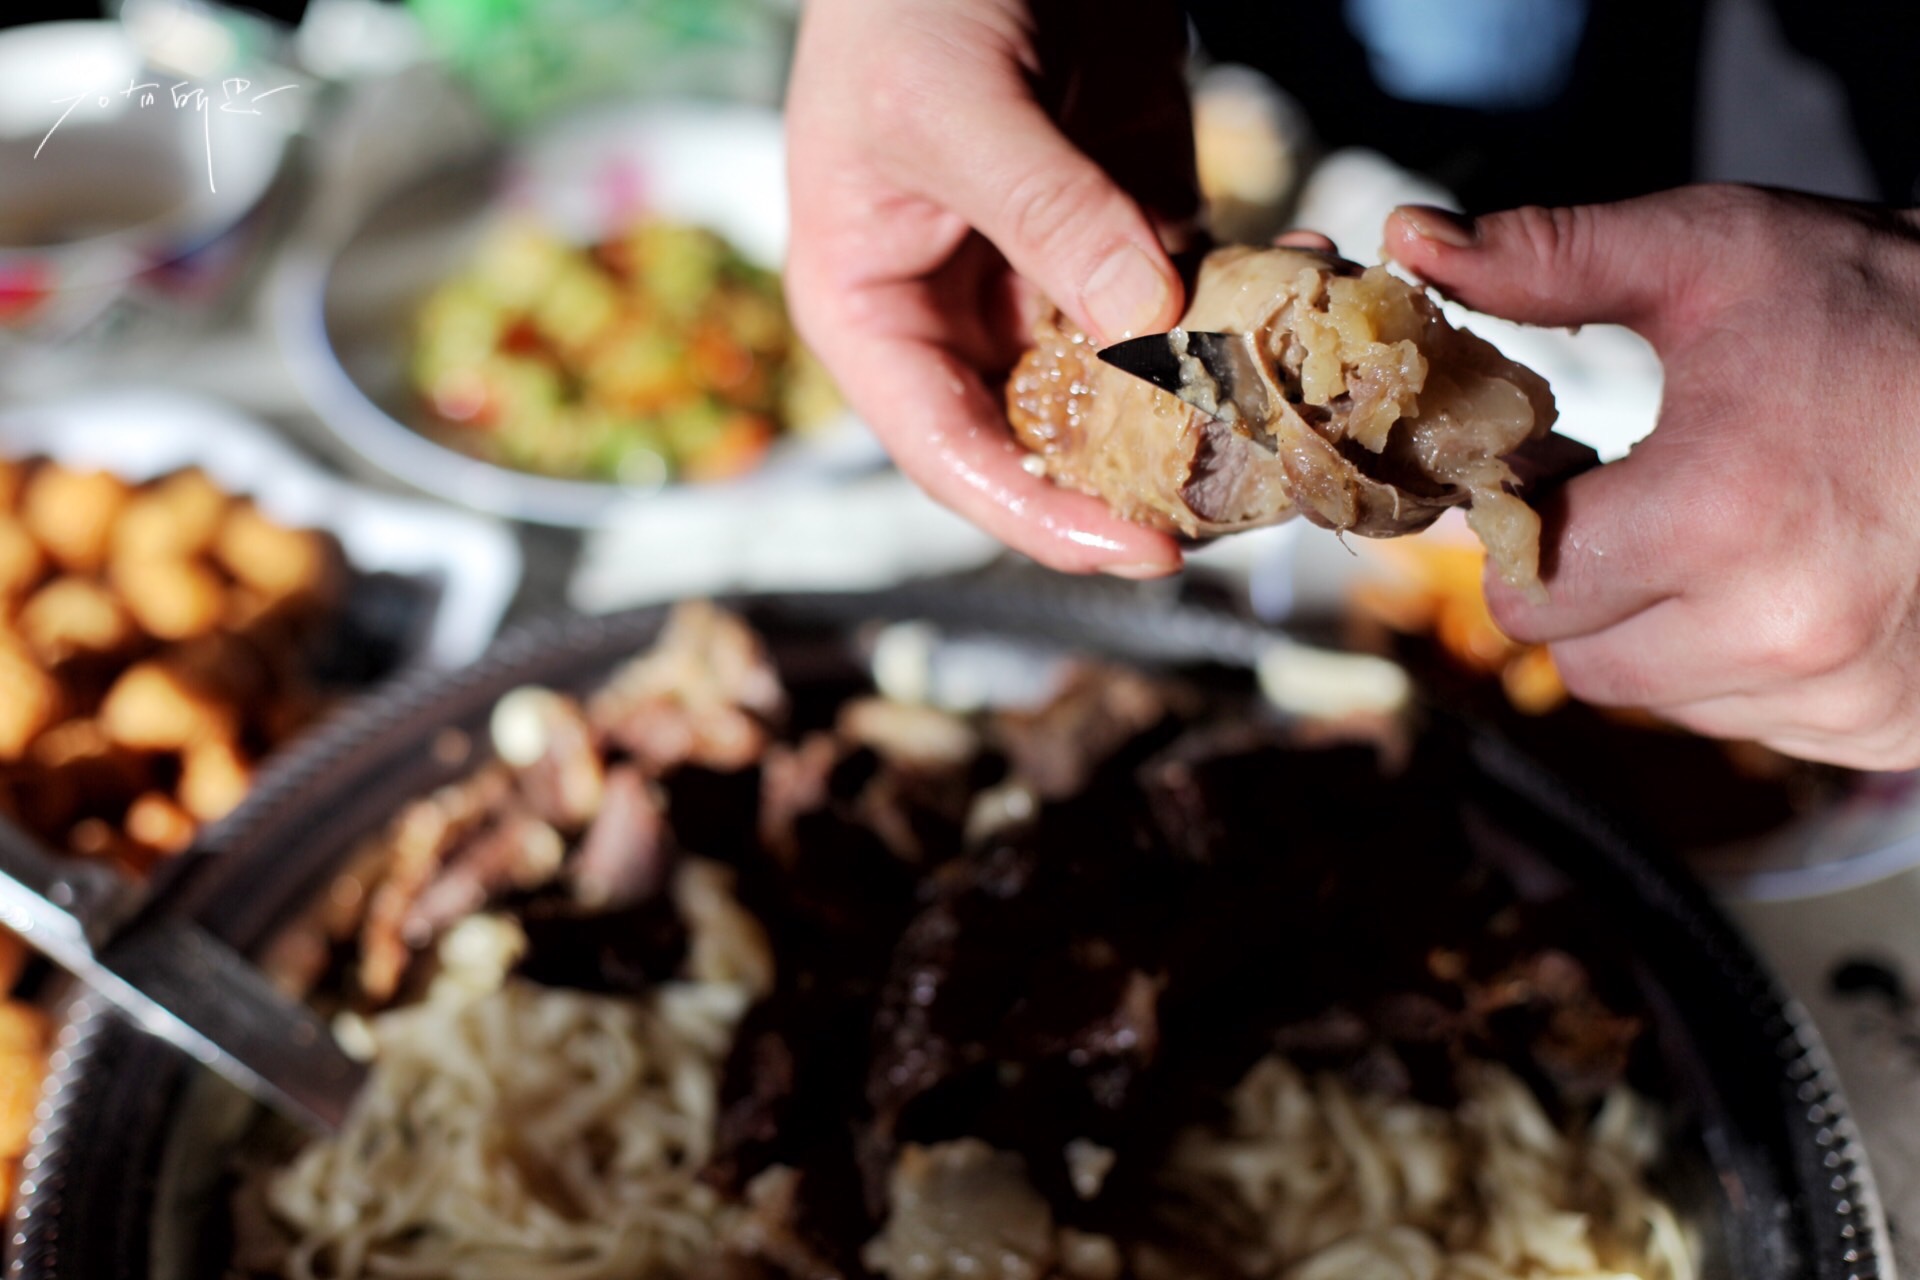 哈萨克人食物 库存照片. 图片 包括有 螺母, 果子, 干酪, 节日, 乳状, 凝乳, 市场, 伙计, 卡扎克斯坦 - 54847928